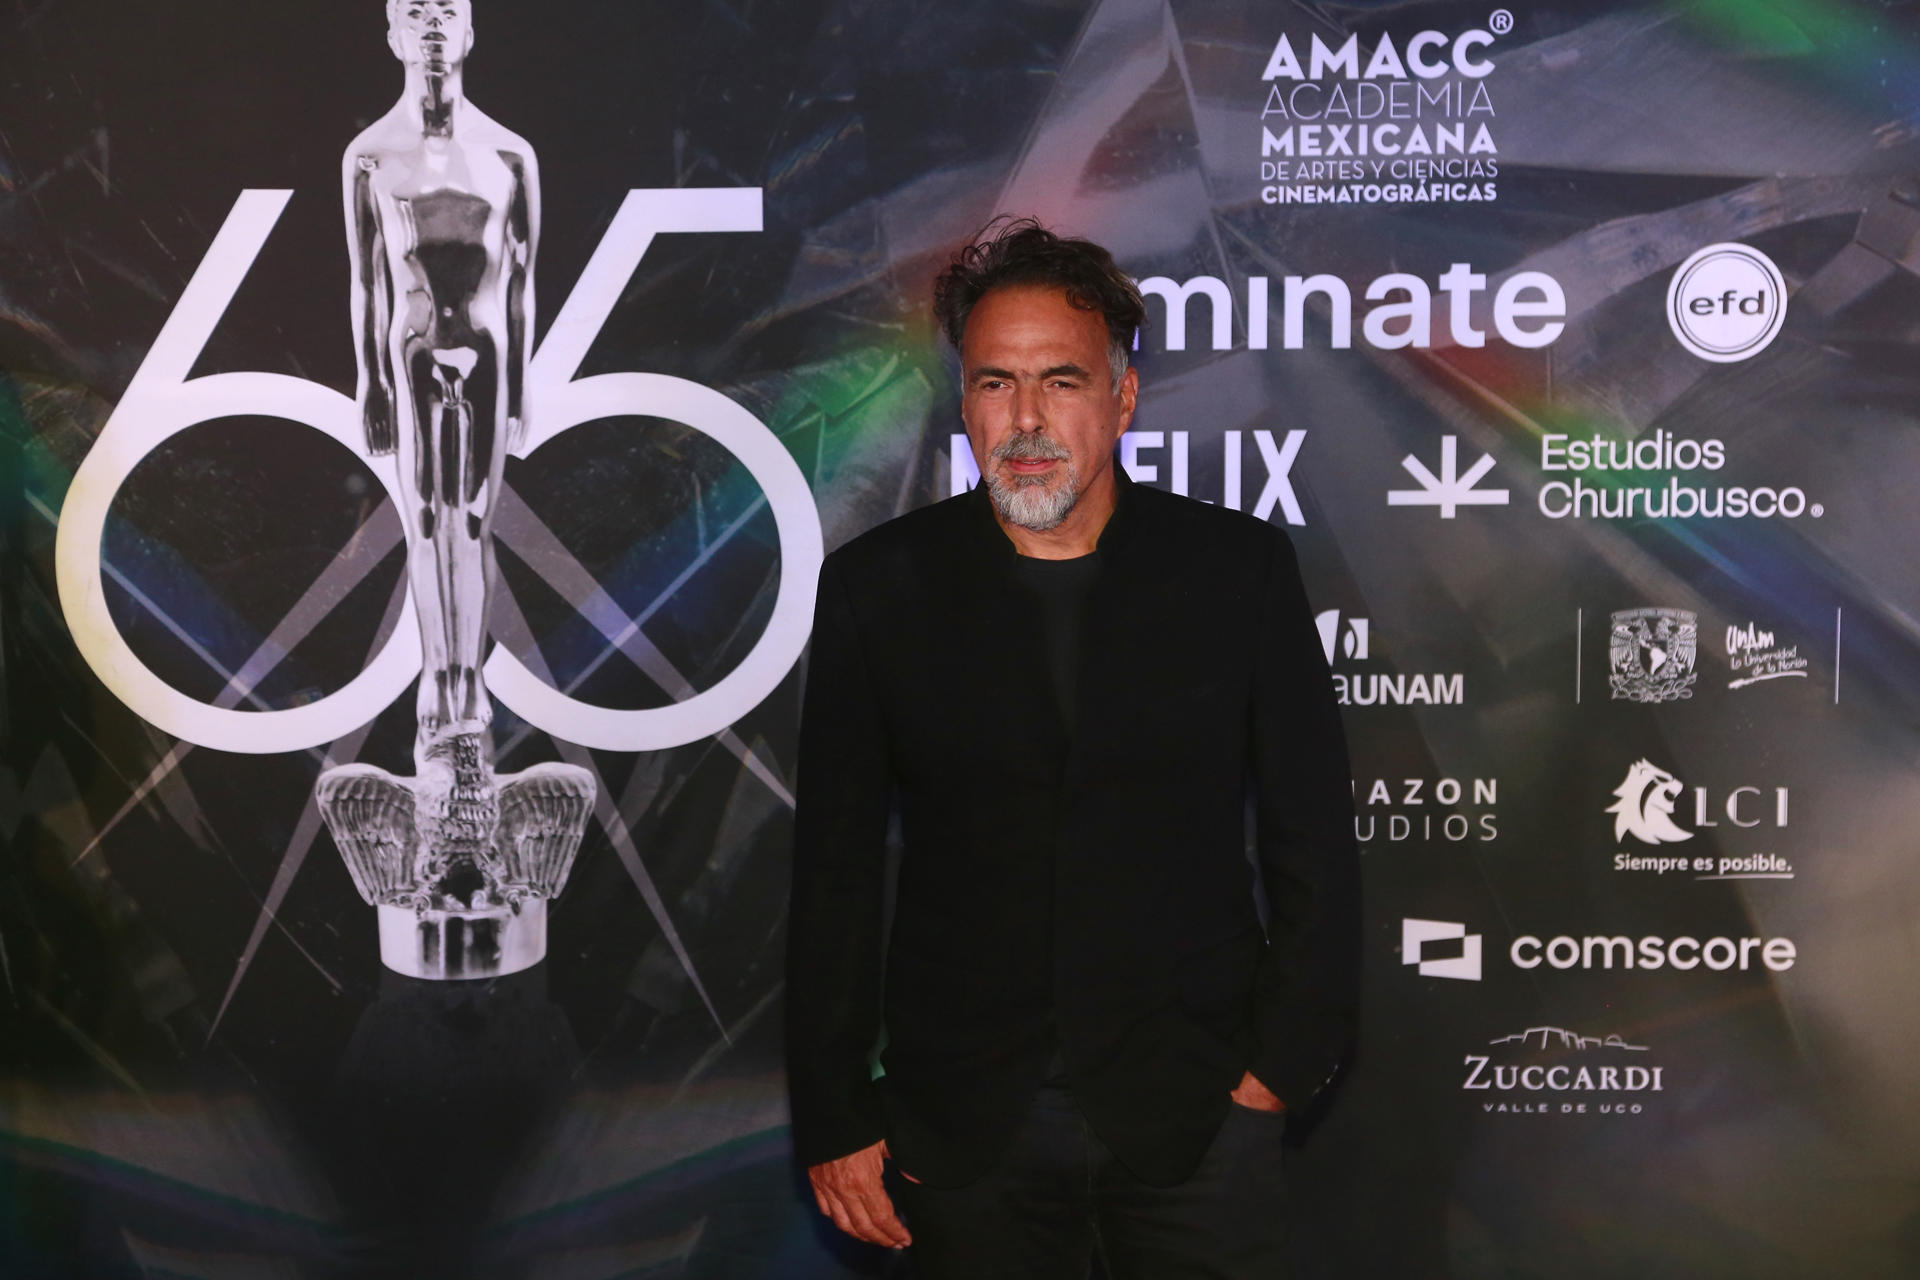 González Iñárritu alaba el crecimiento del cine hecho por mujeres en México